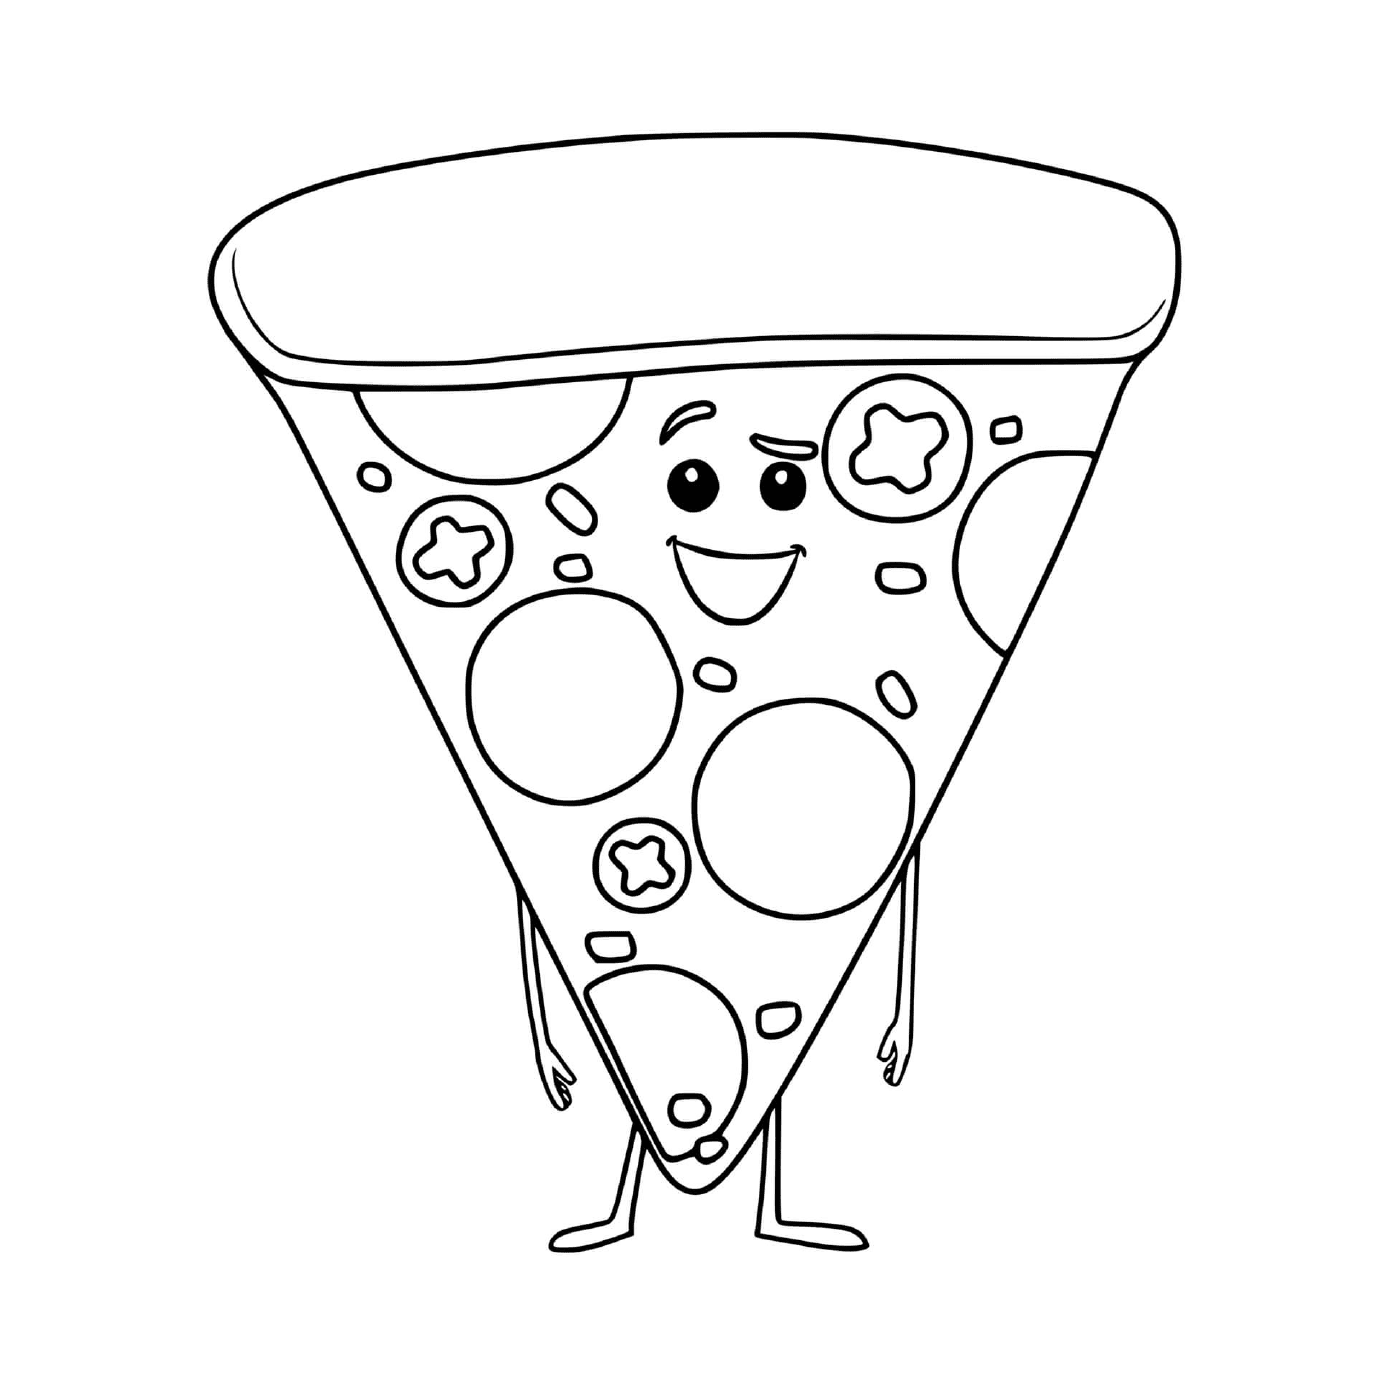  Un pedazo de pizza divertida 